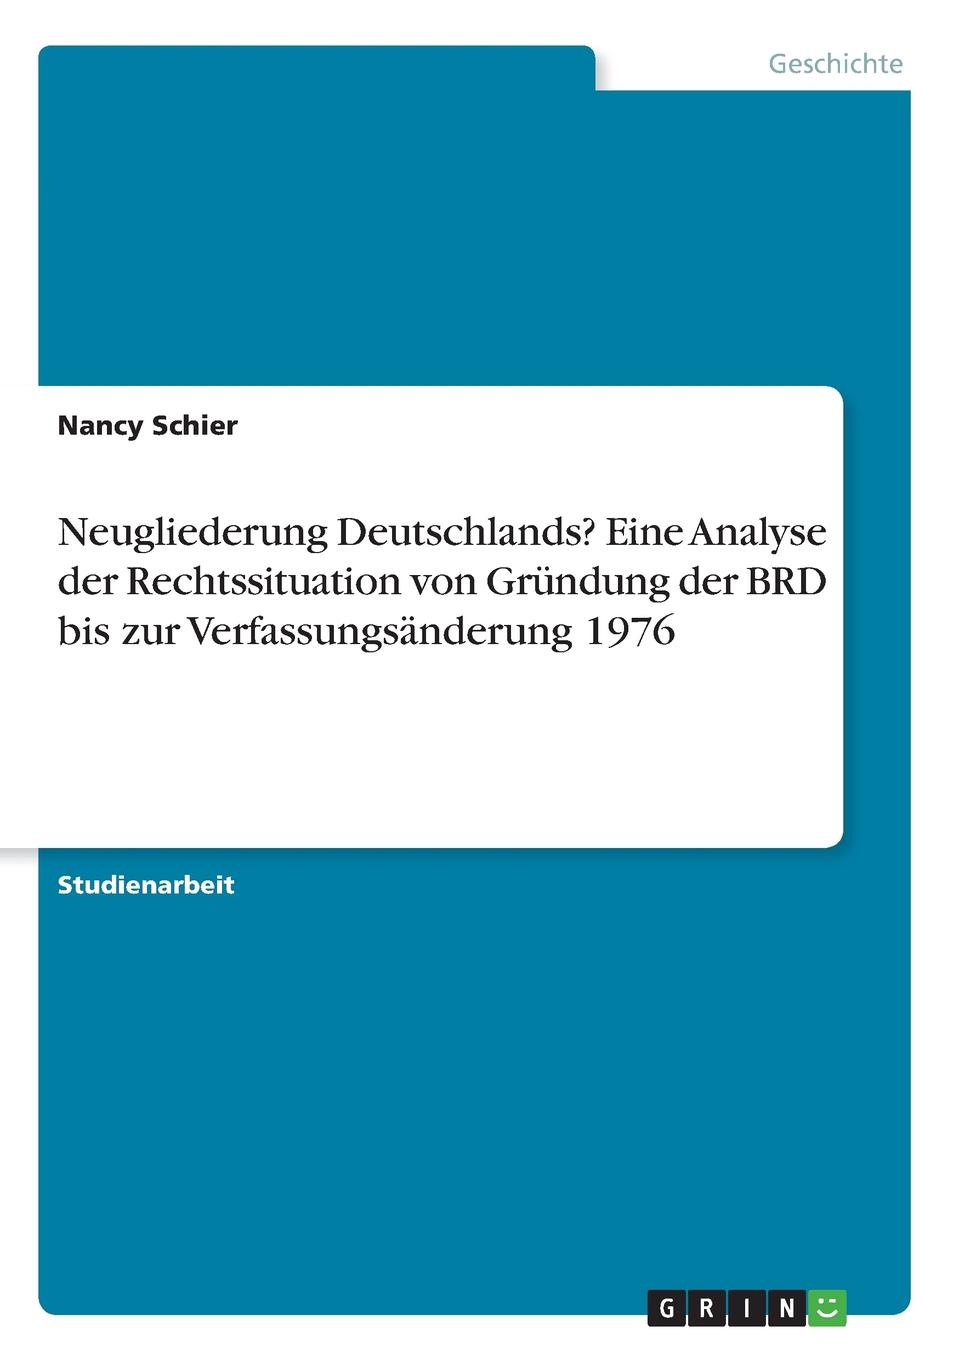 Neugliederung Deutschlands. Eine Analyse der Rechtssituation von Grundung der BRD bis zur Verfassungsanderung 1976